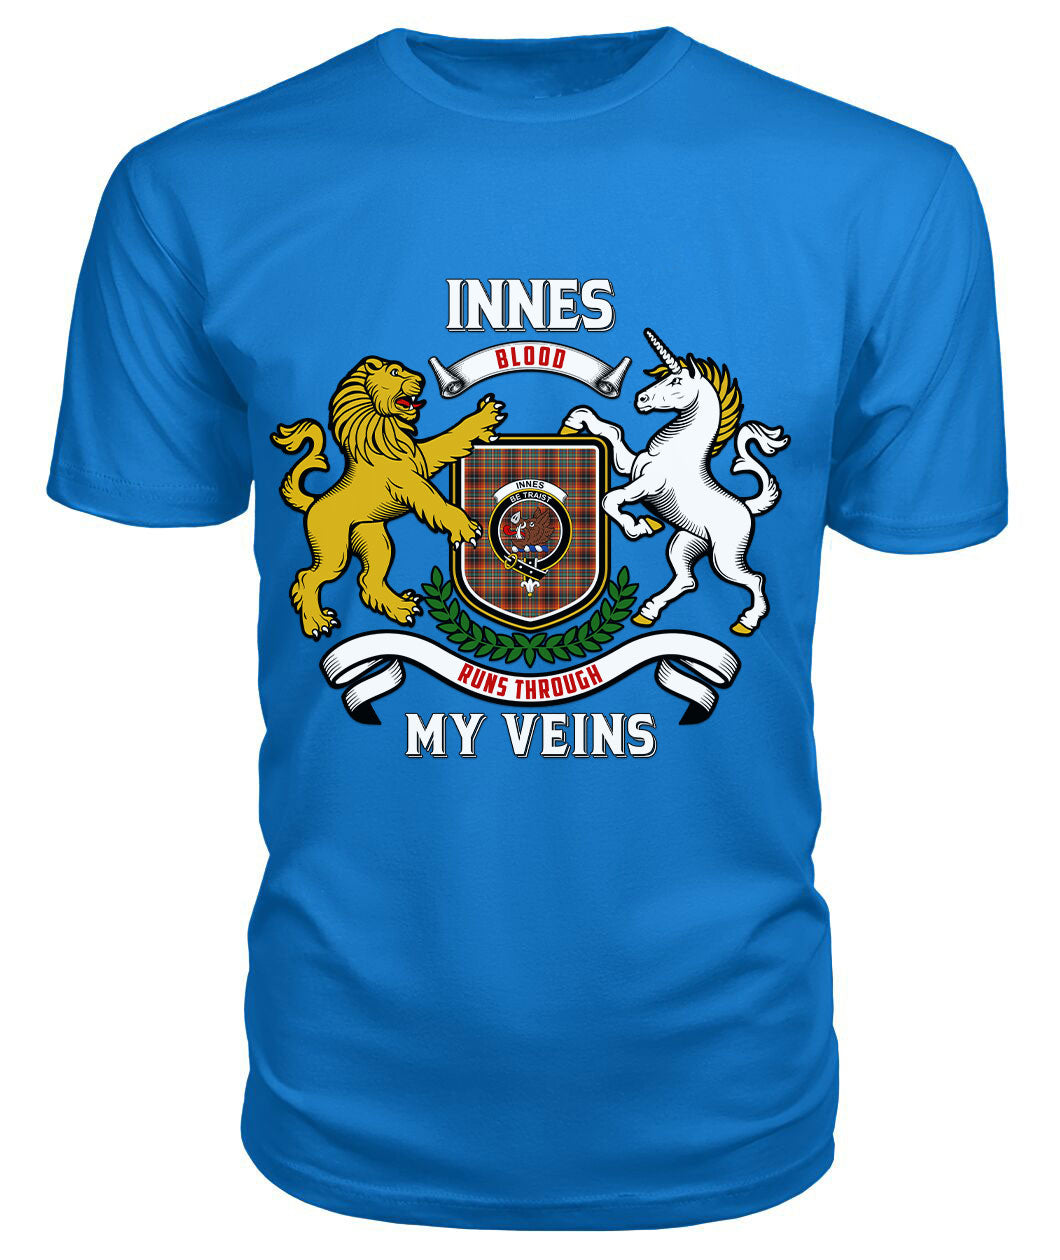 Innes Ancient Tartan Crest 2D T-shirt - Blood Runs Through My Veins Style